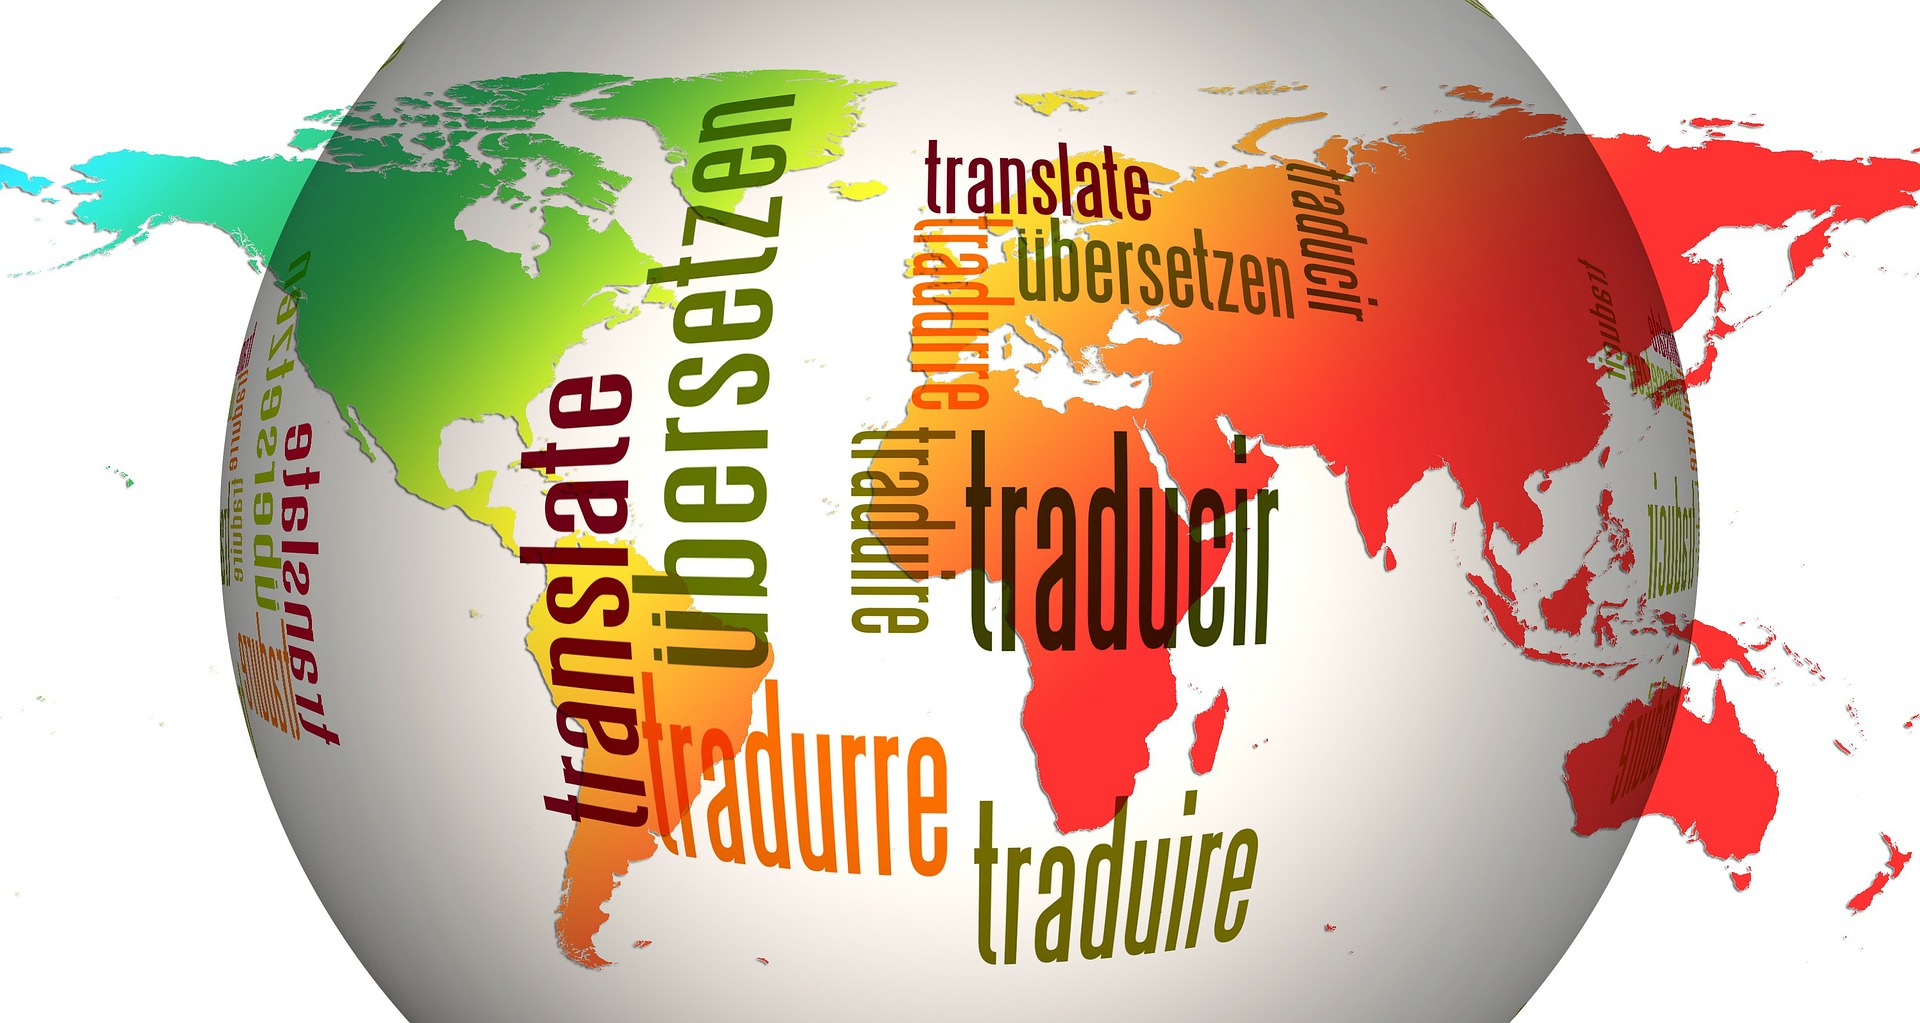 L’evoluzione del linguaggio pubblicitario per bilingui